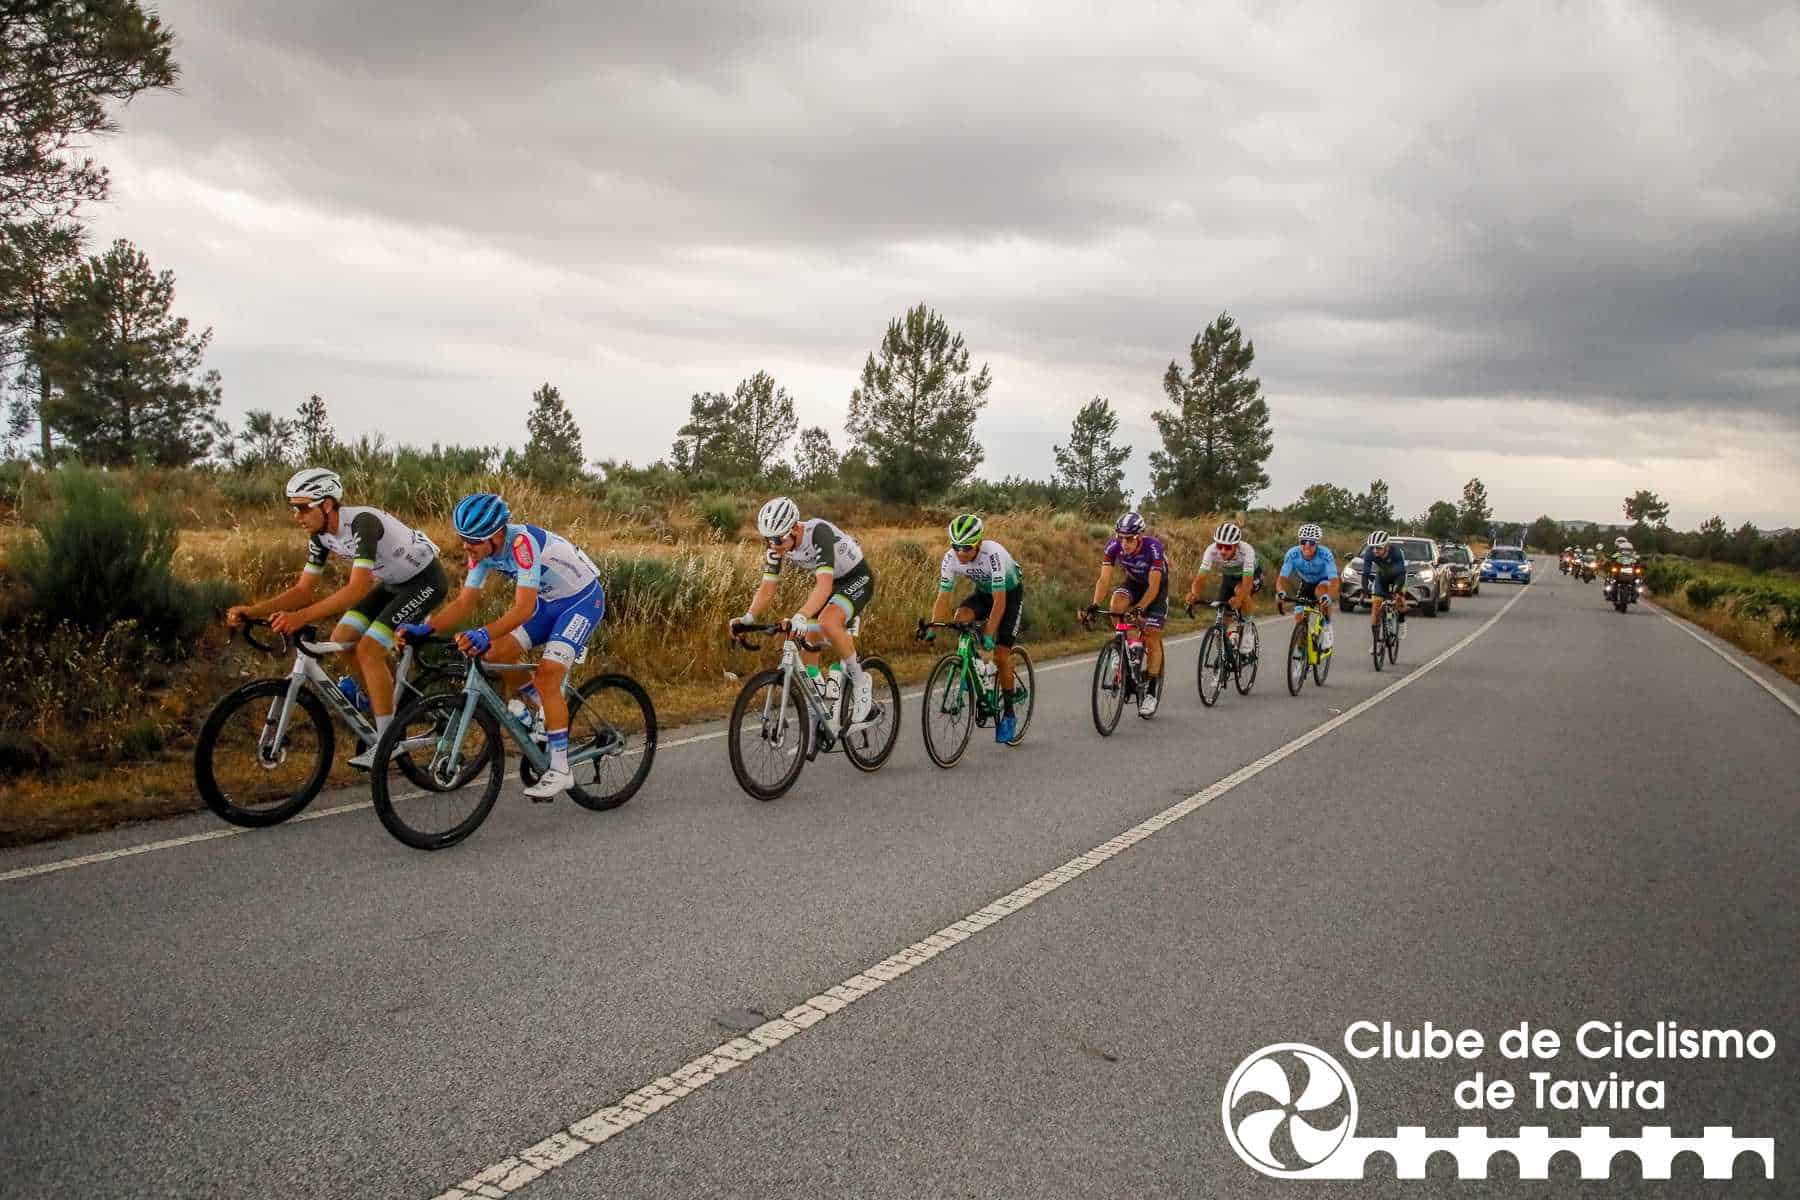 Clube de Ciclismo de Tavira - Grande Prémio Internacional Beiras e Serra da Estrela 202364